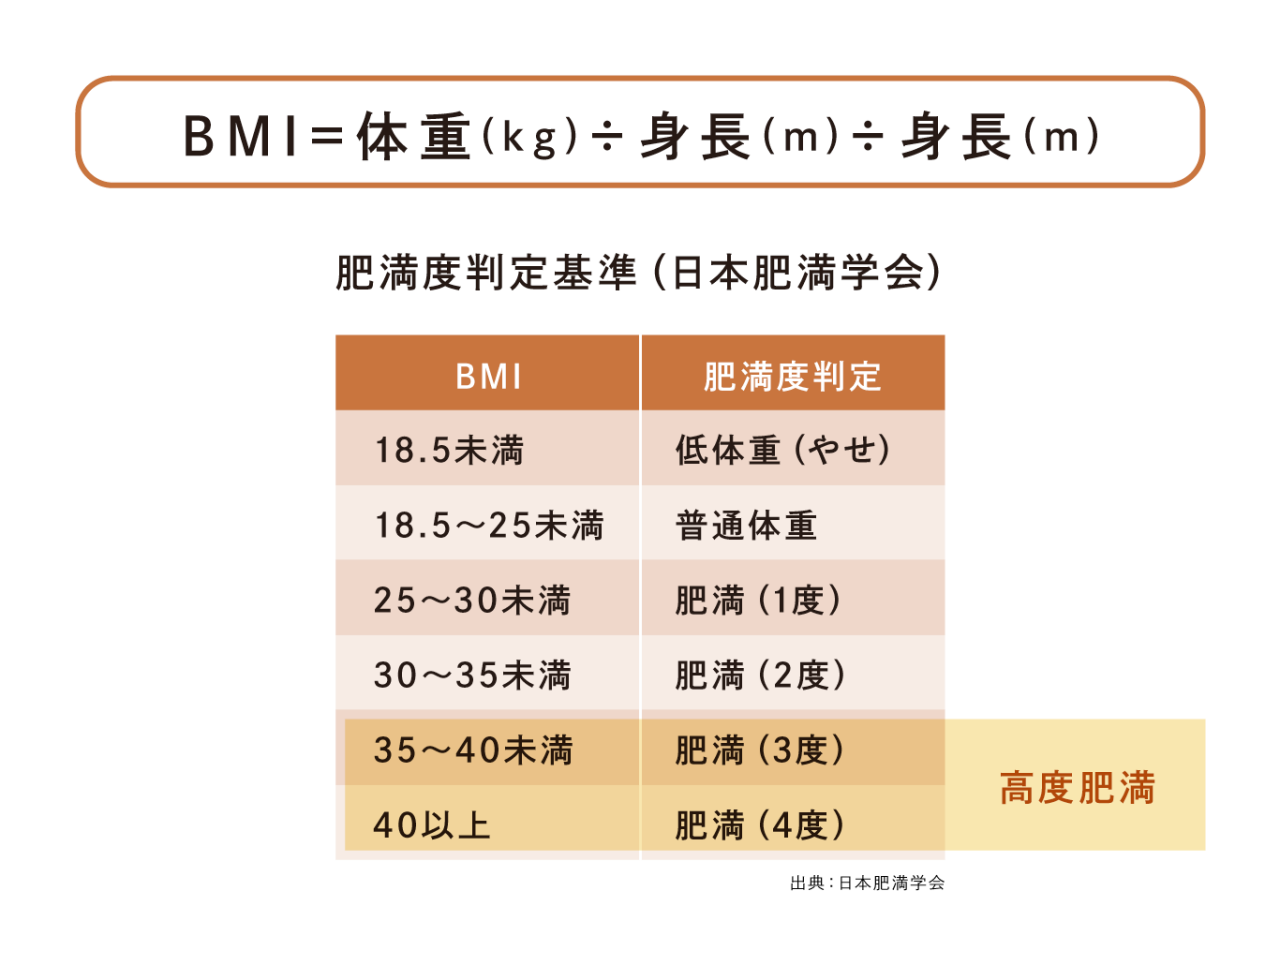 BMI（ボディマス指数）とは、肥満度を表す指標として国際的に用いられている体格指数です。[体重（kg）]÷[身長（m）] ÷[身長（m）]の計算式で求めることができます。BMIの指数を肥満度判定基準（日本肥満学会）に照らすと、BMIが18.5未満は低体重（やせ）、18.5～25未満は普通体重、25～30未満は肥満（1度）、30～35未満（2度）、35～40未満は肥満（3度）、40以上は肥満（4度）で、BMI35以上は高度肥満です。